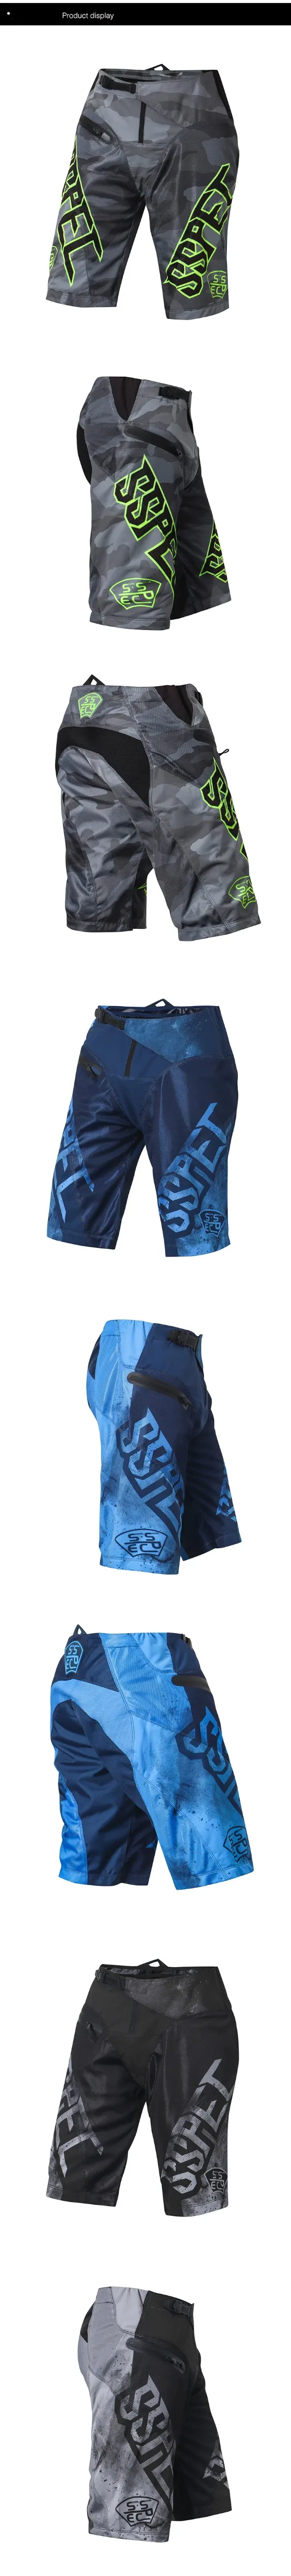 Бренд Топ MTB MX шорты для горного велосипеда Мужские штаны для мотокросса Горные DH темно-синие фиолетовые велосипедные шорты